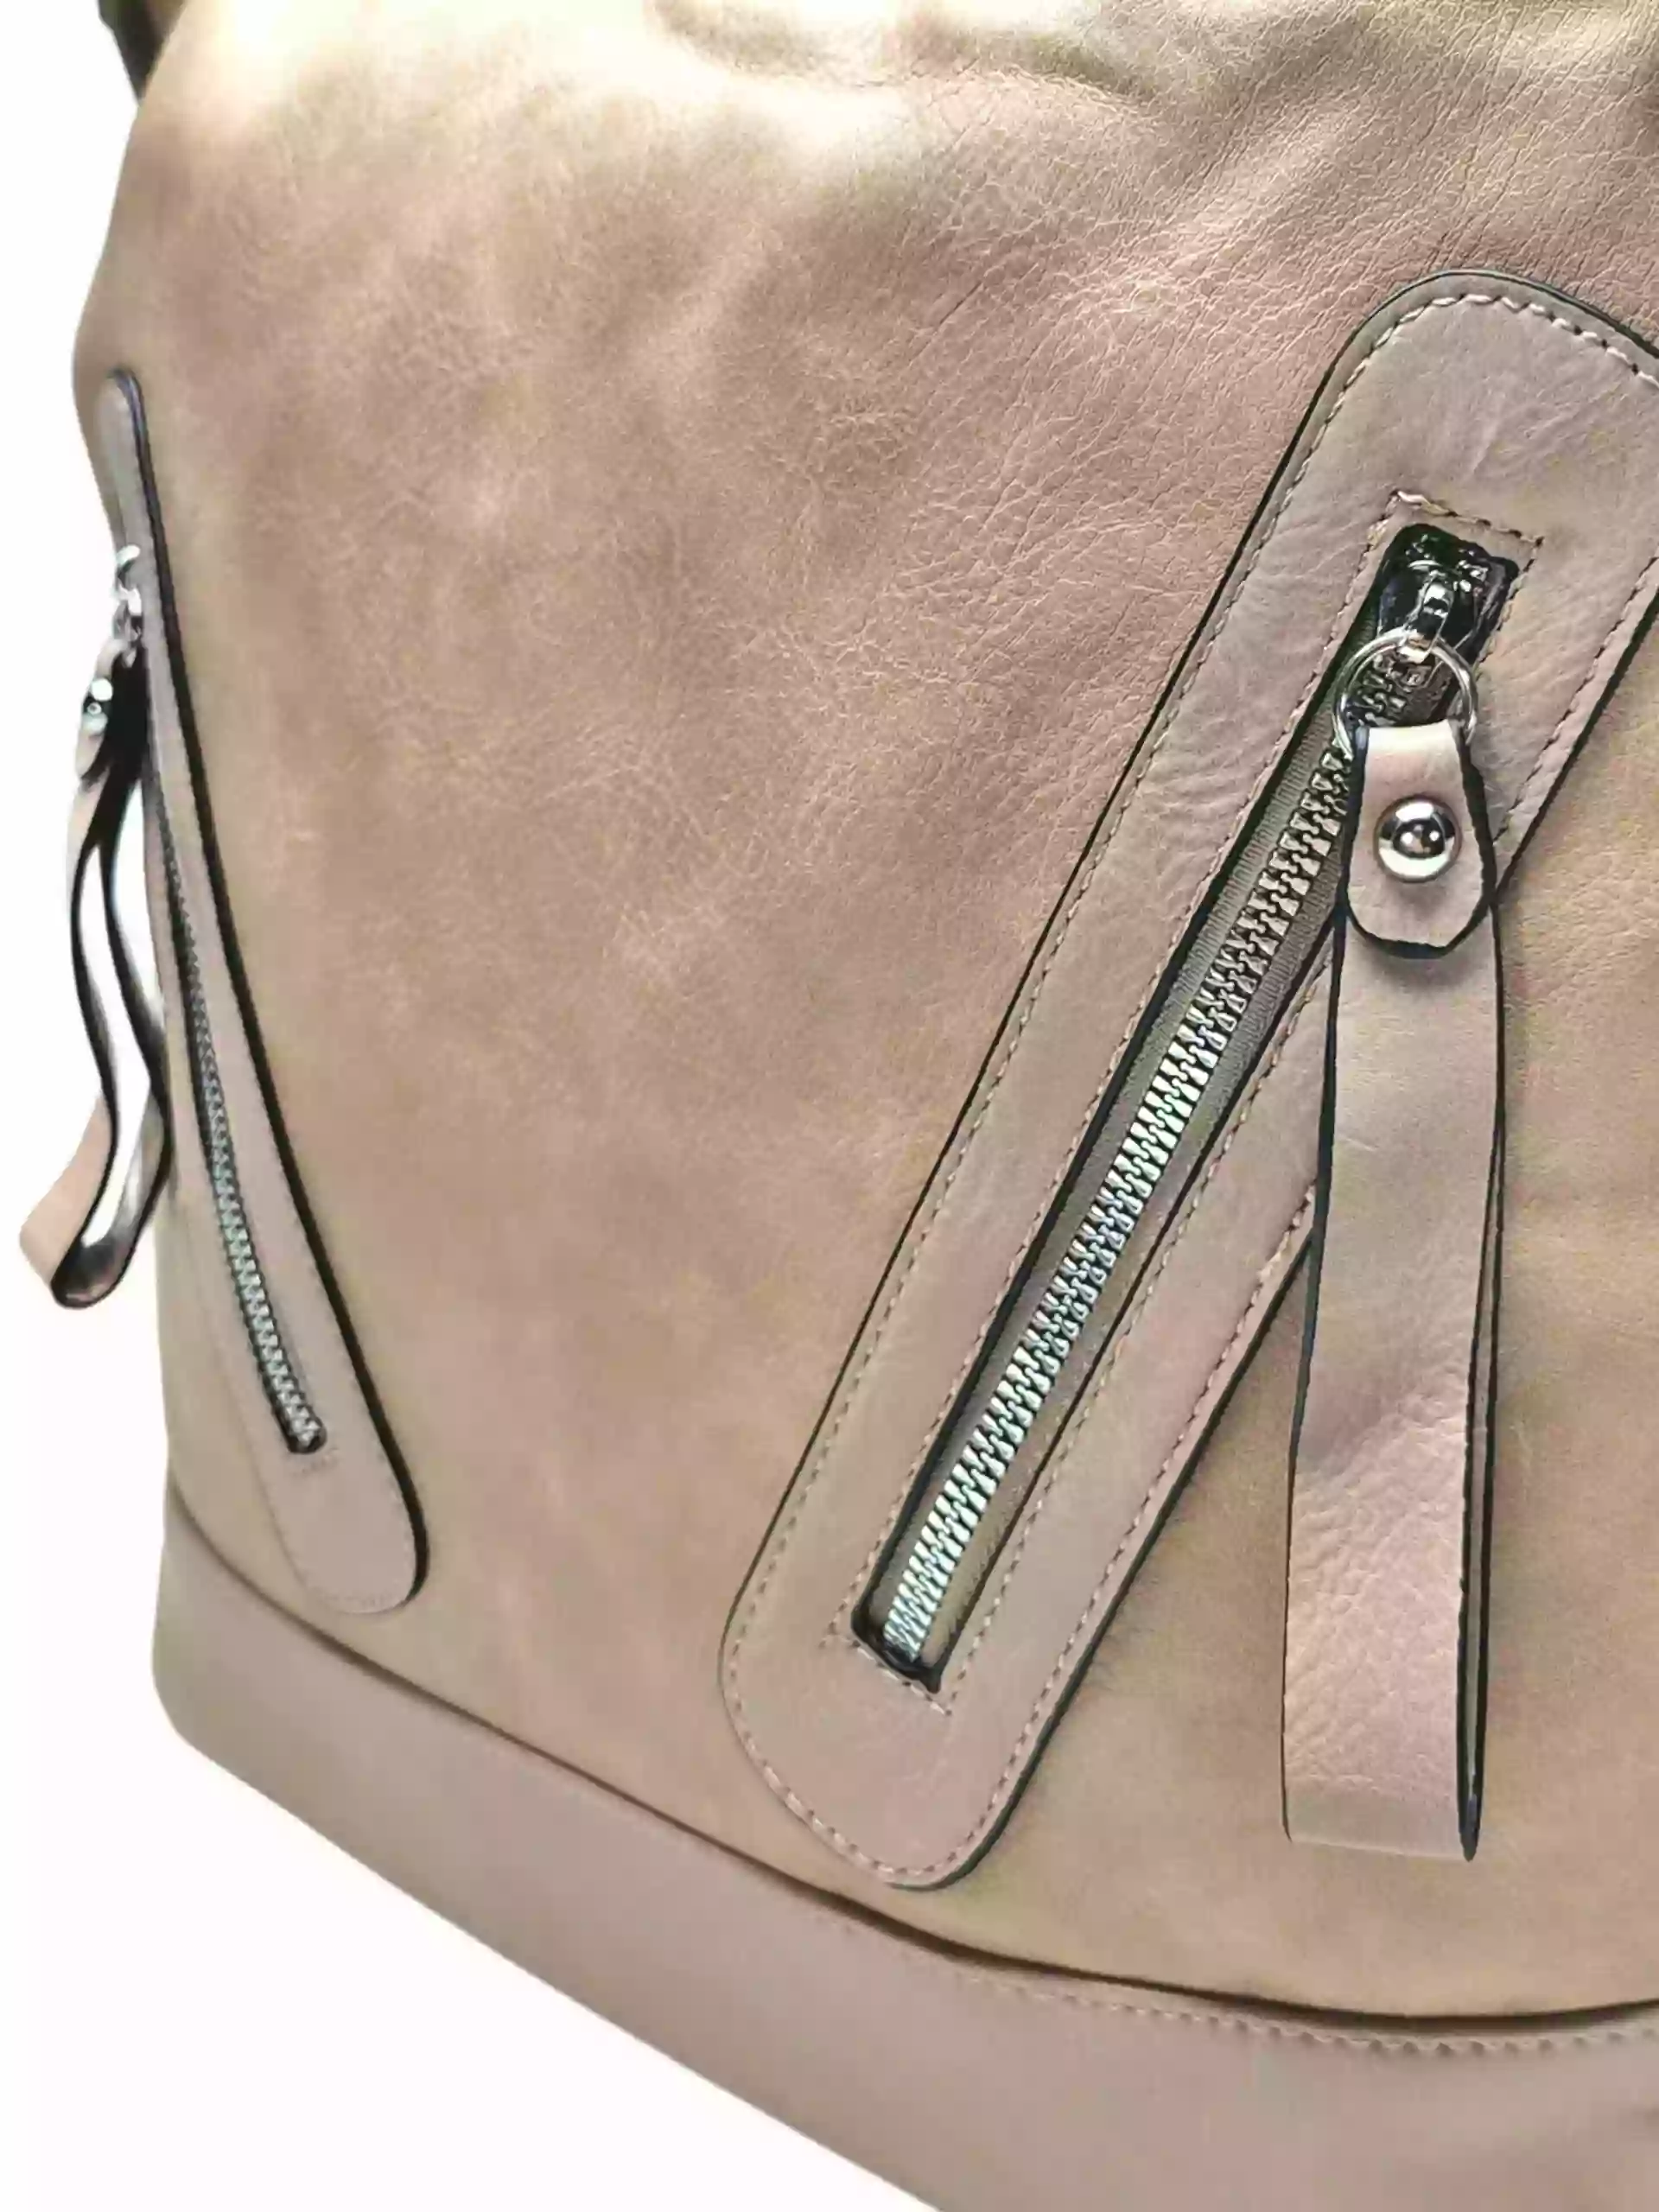 Velký světle hnědý kabelko-batoh s kapsami, Tapple, H23906, detail kabelko-batohu